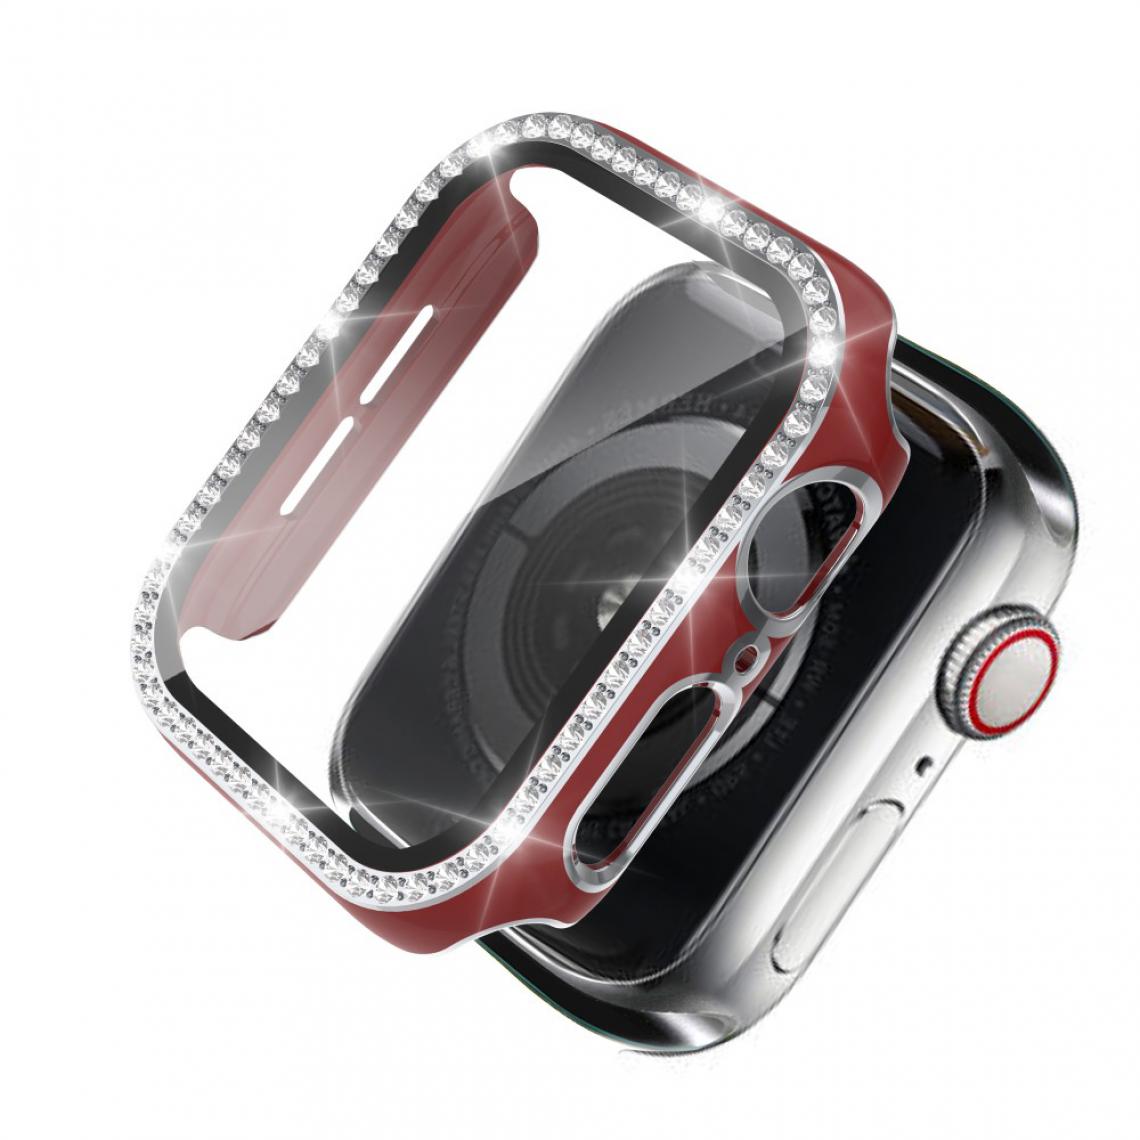 Other - Coque en TPU Strass en cristal de galvanoplastie bicolore rouge/argent pour votre Apple Watch 1/2/3 42mm - Accessoires bracelet connecté